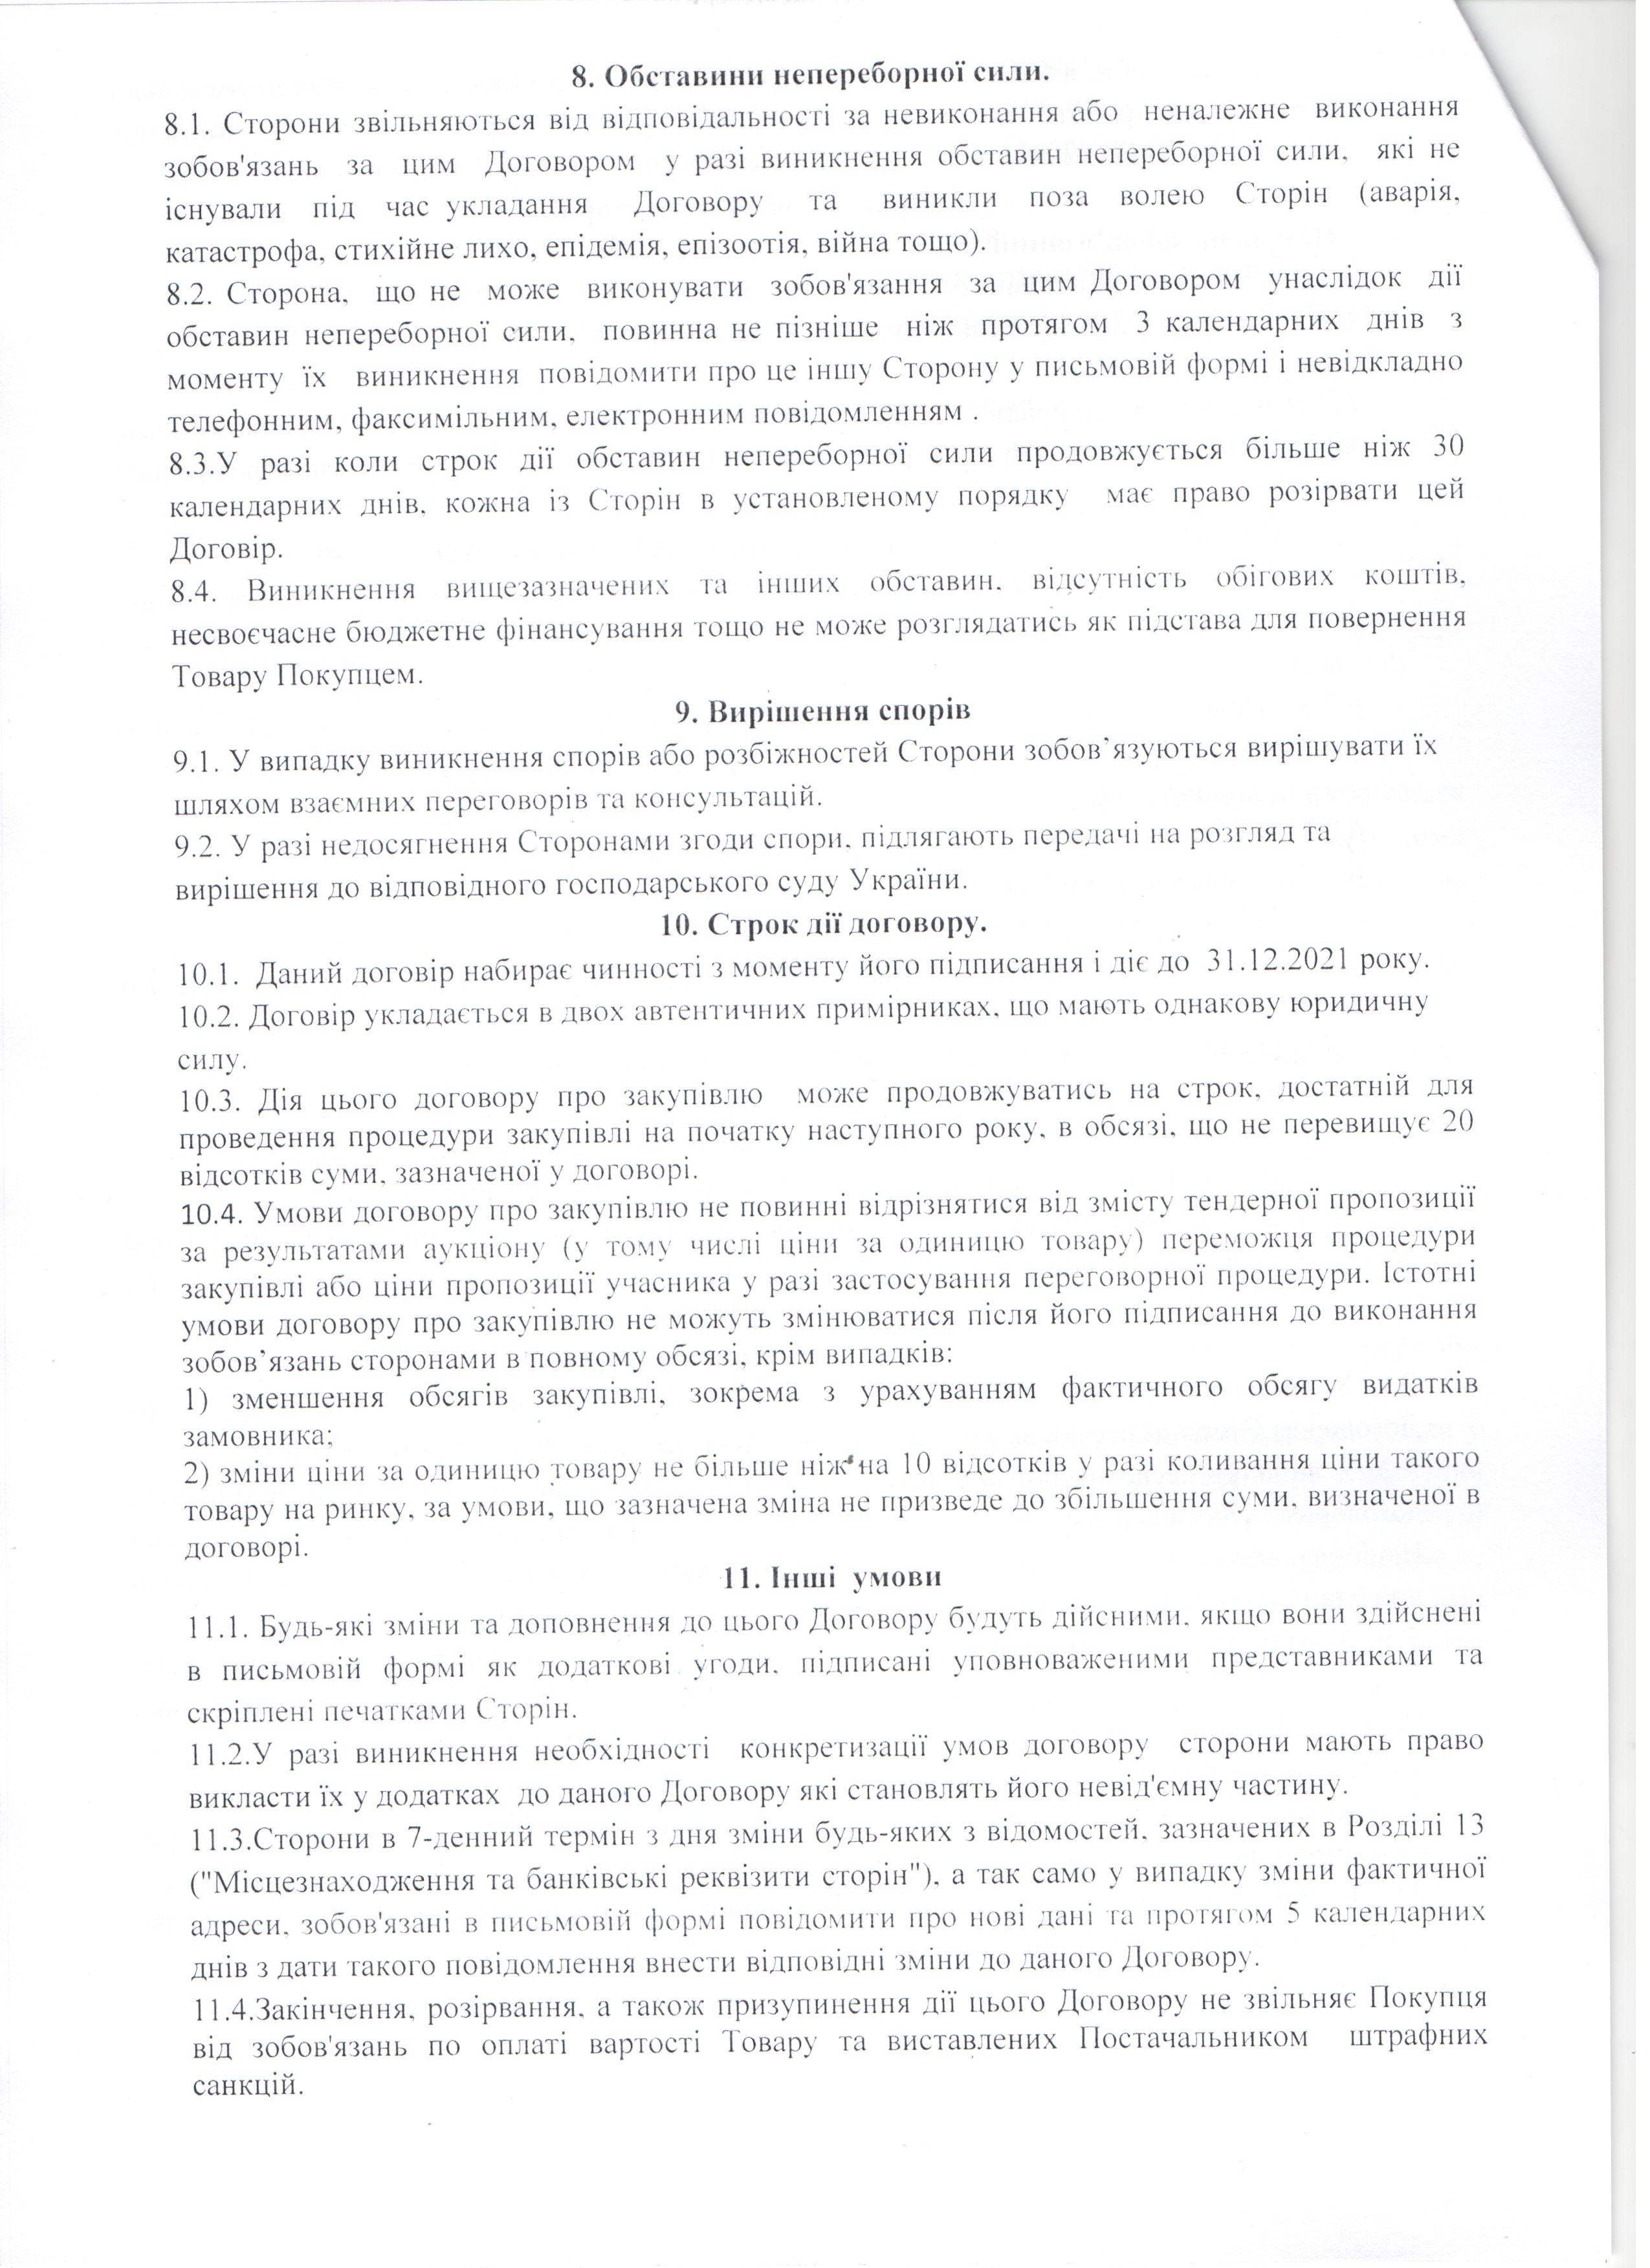 Договір №114 (4) від 07.09.2021 р.